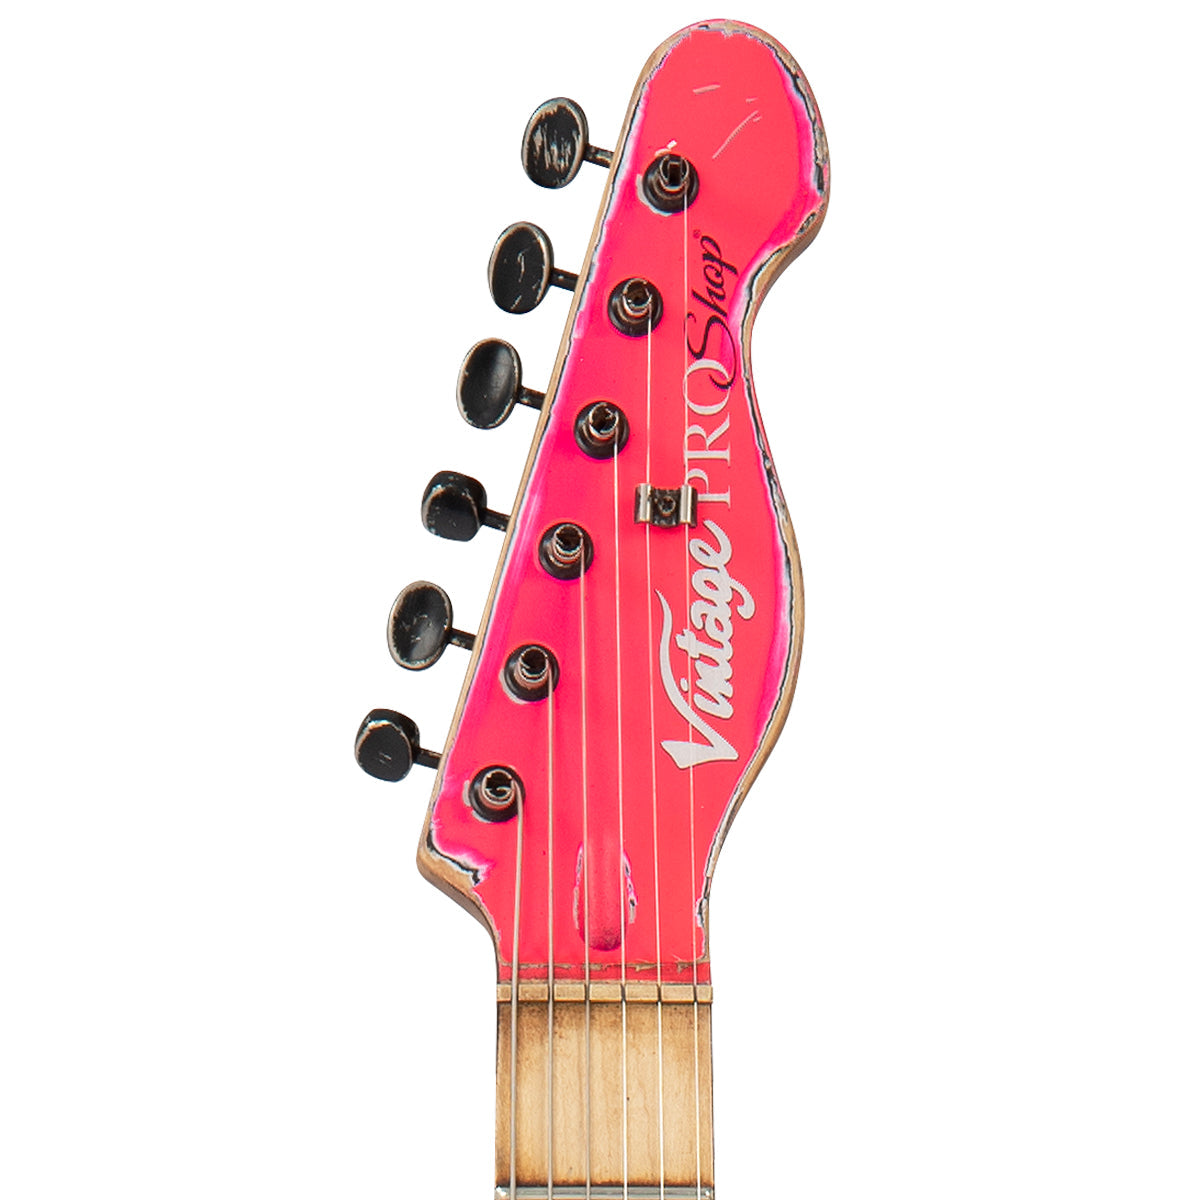 Vintage V75 ProShop Unique ~ Neon Pink, Electrics for sale at Richards Guitars.